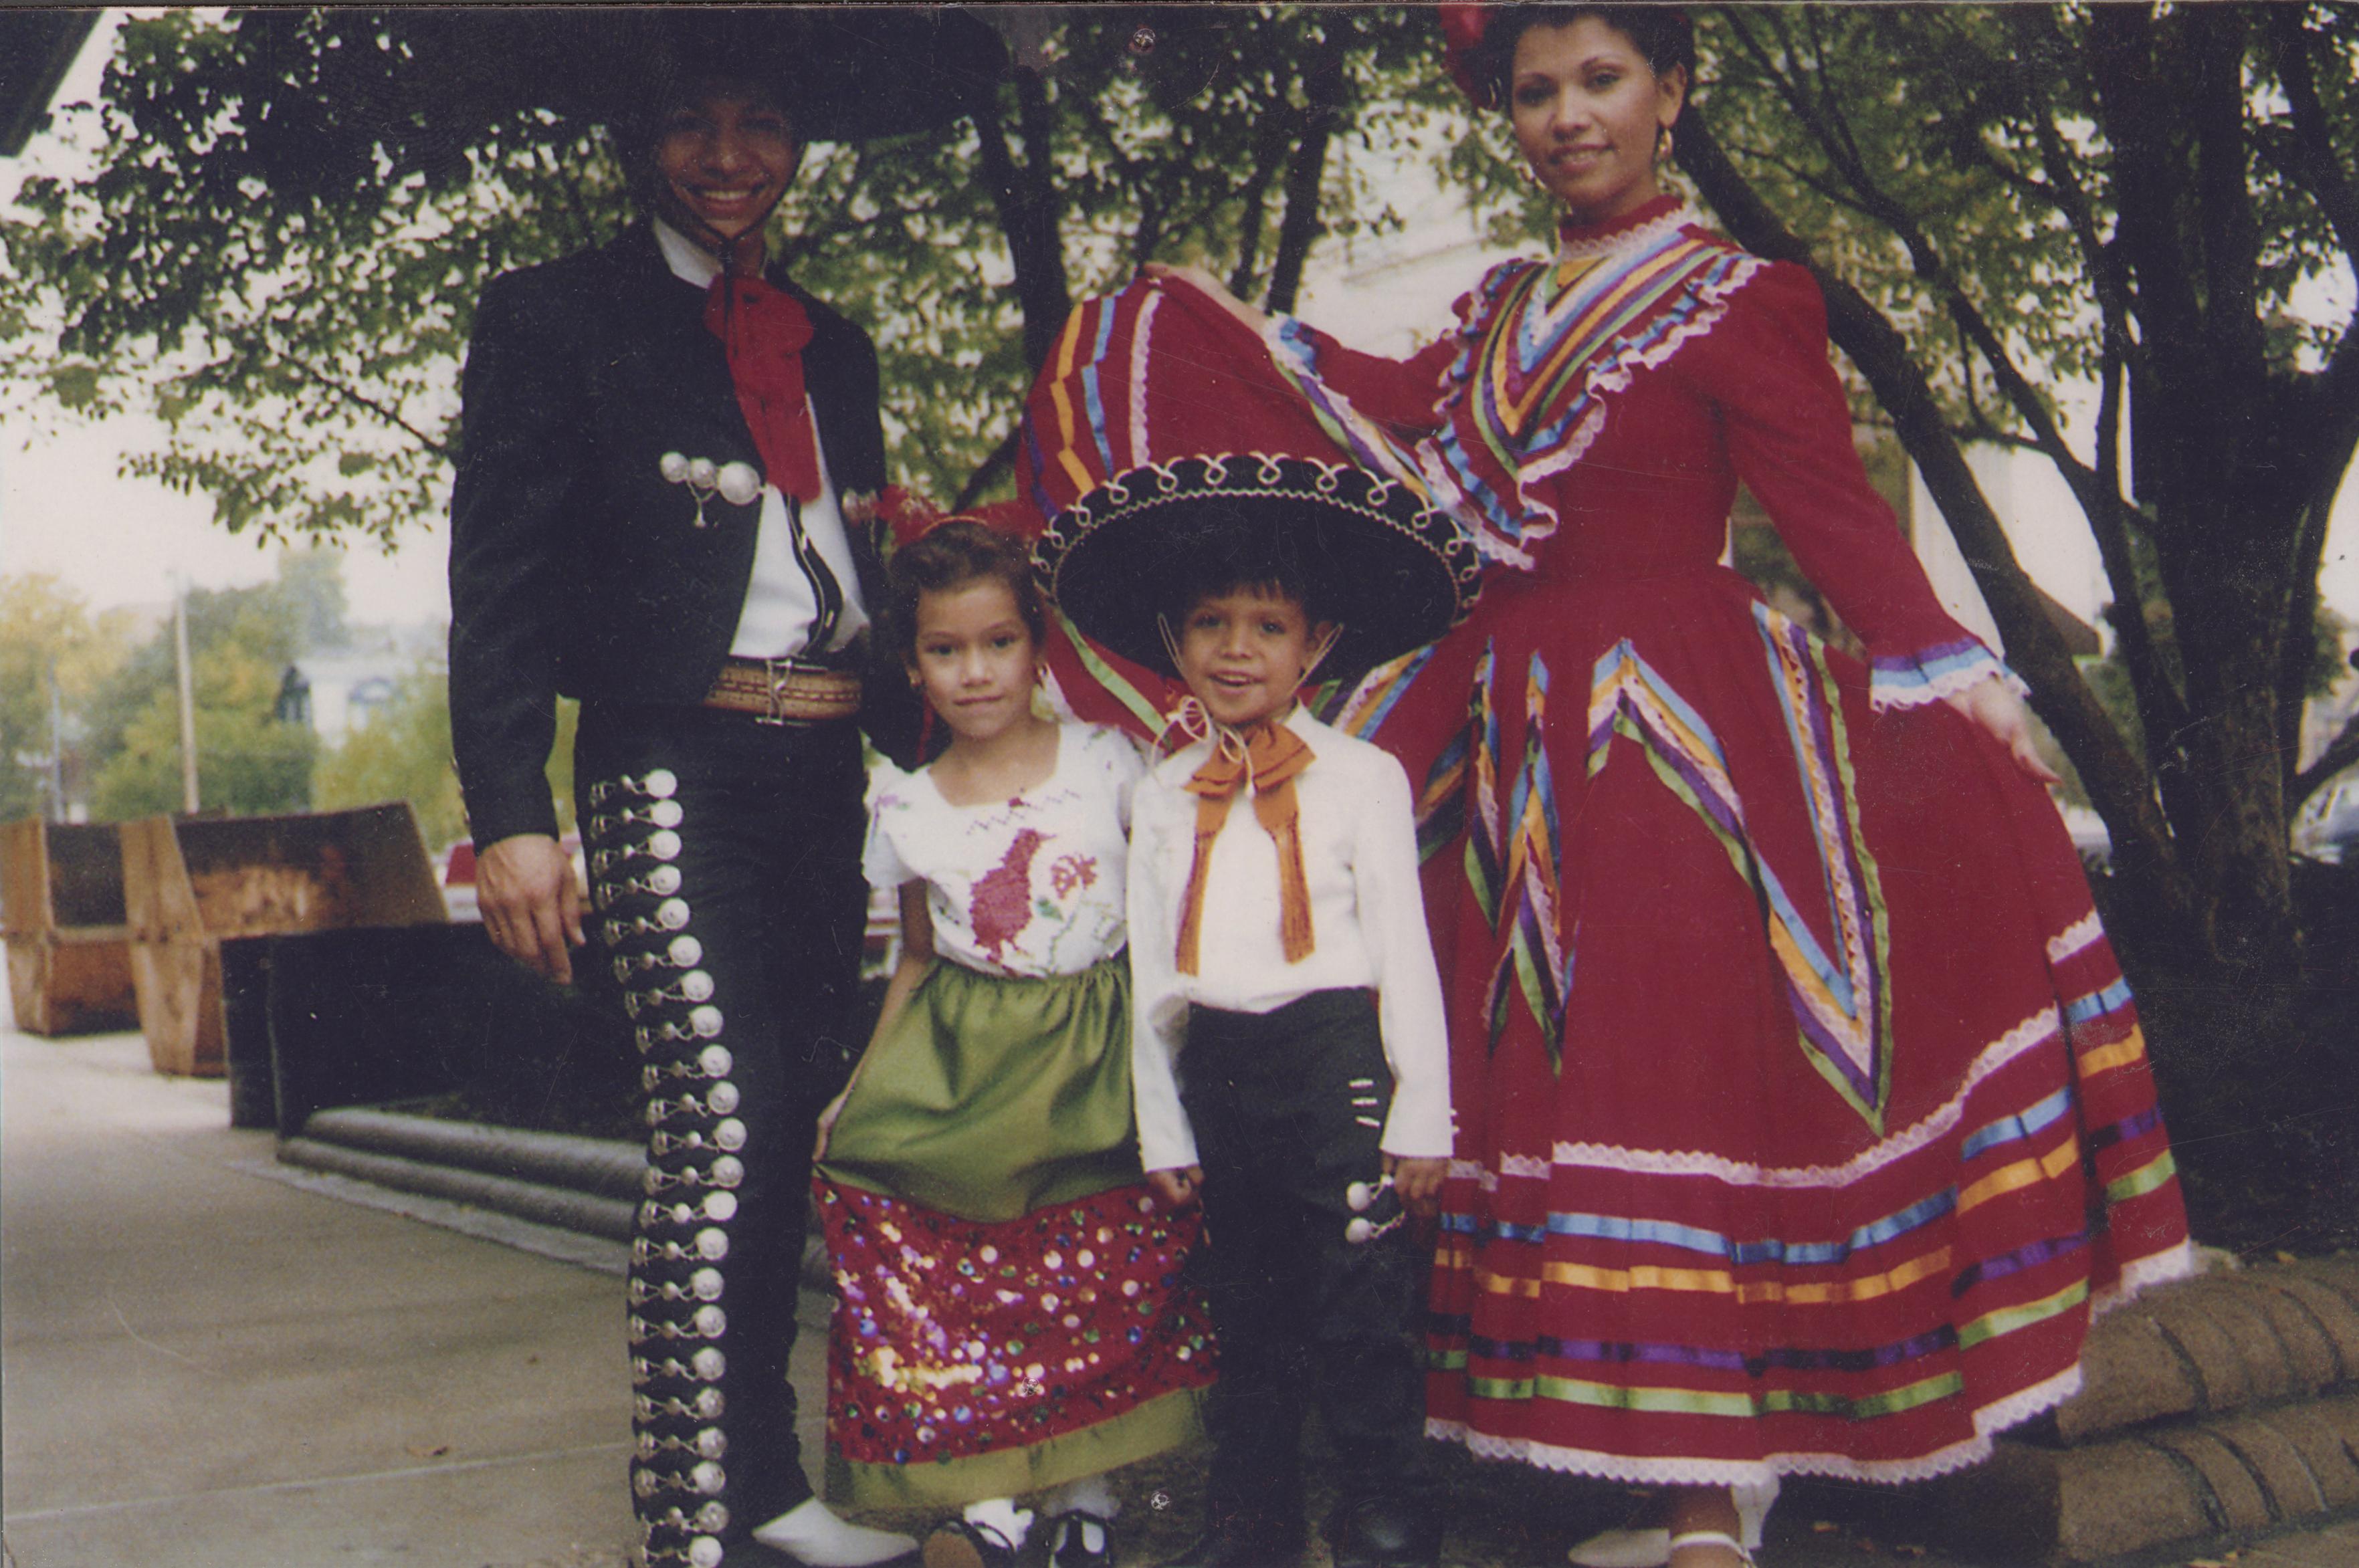 mexican family photos